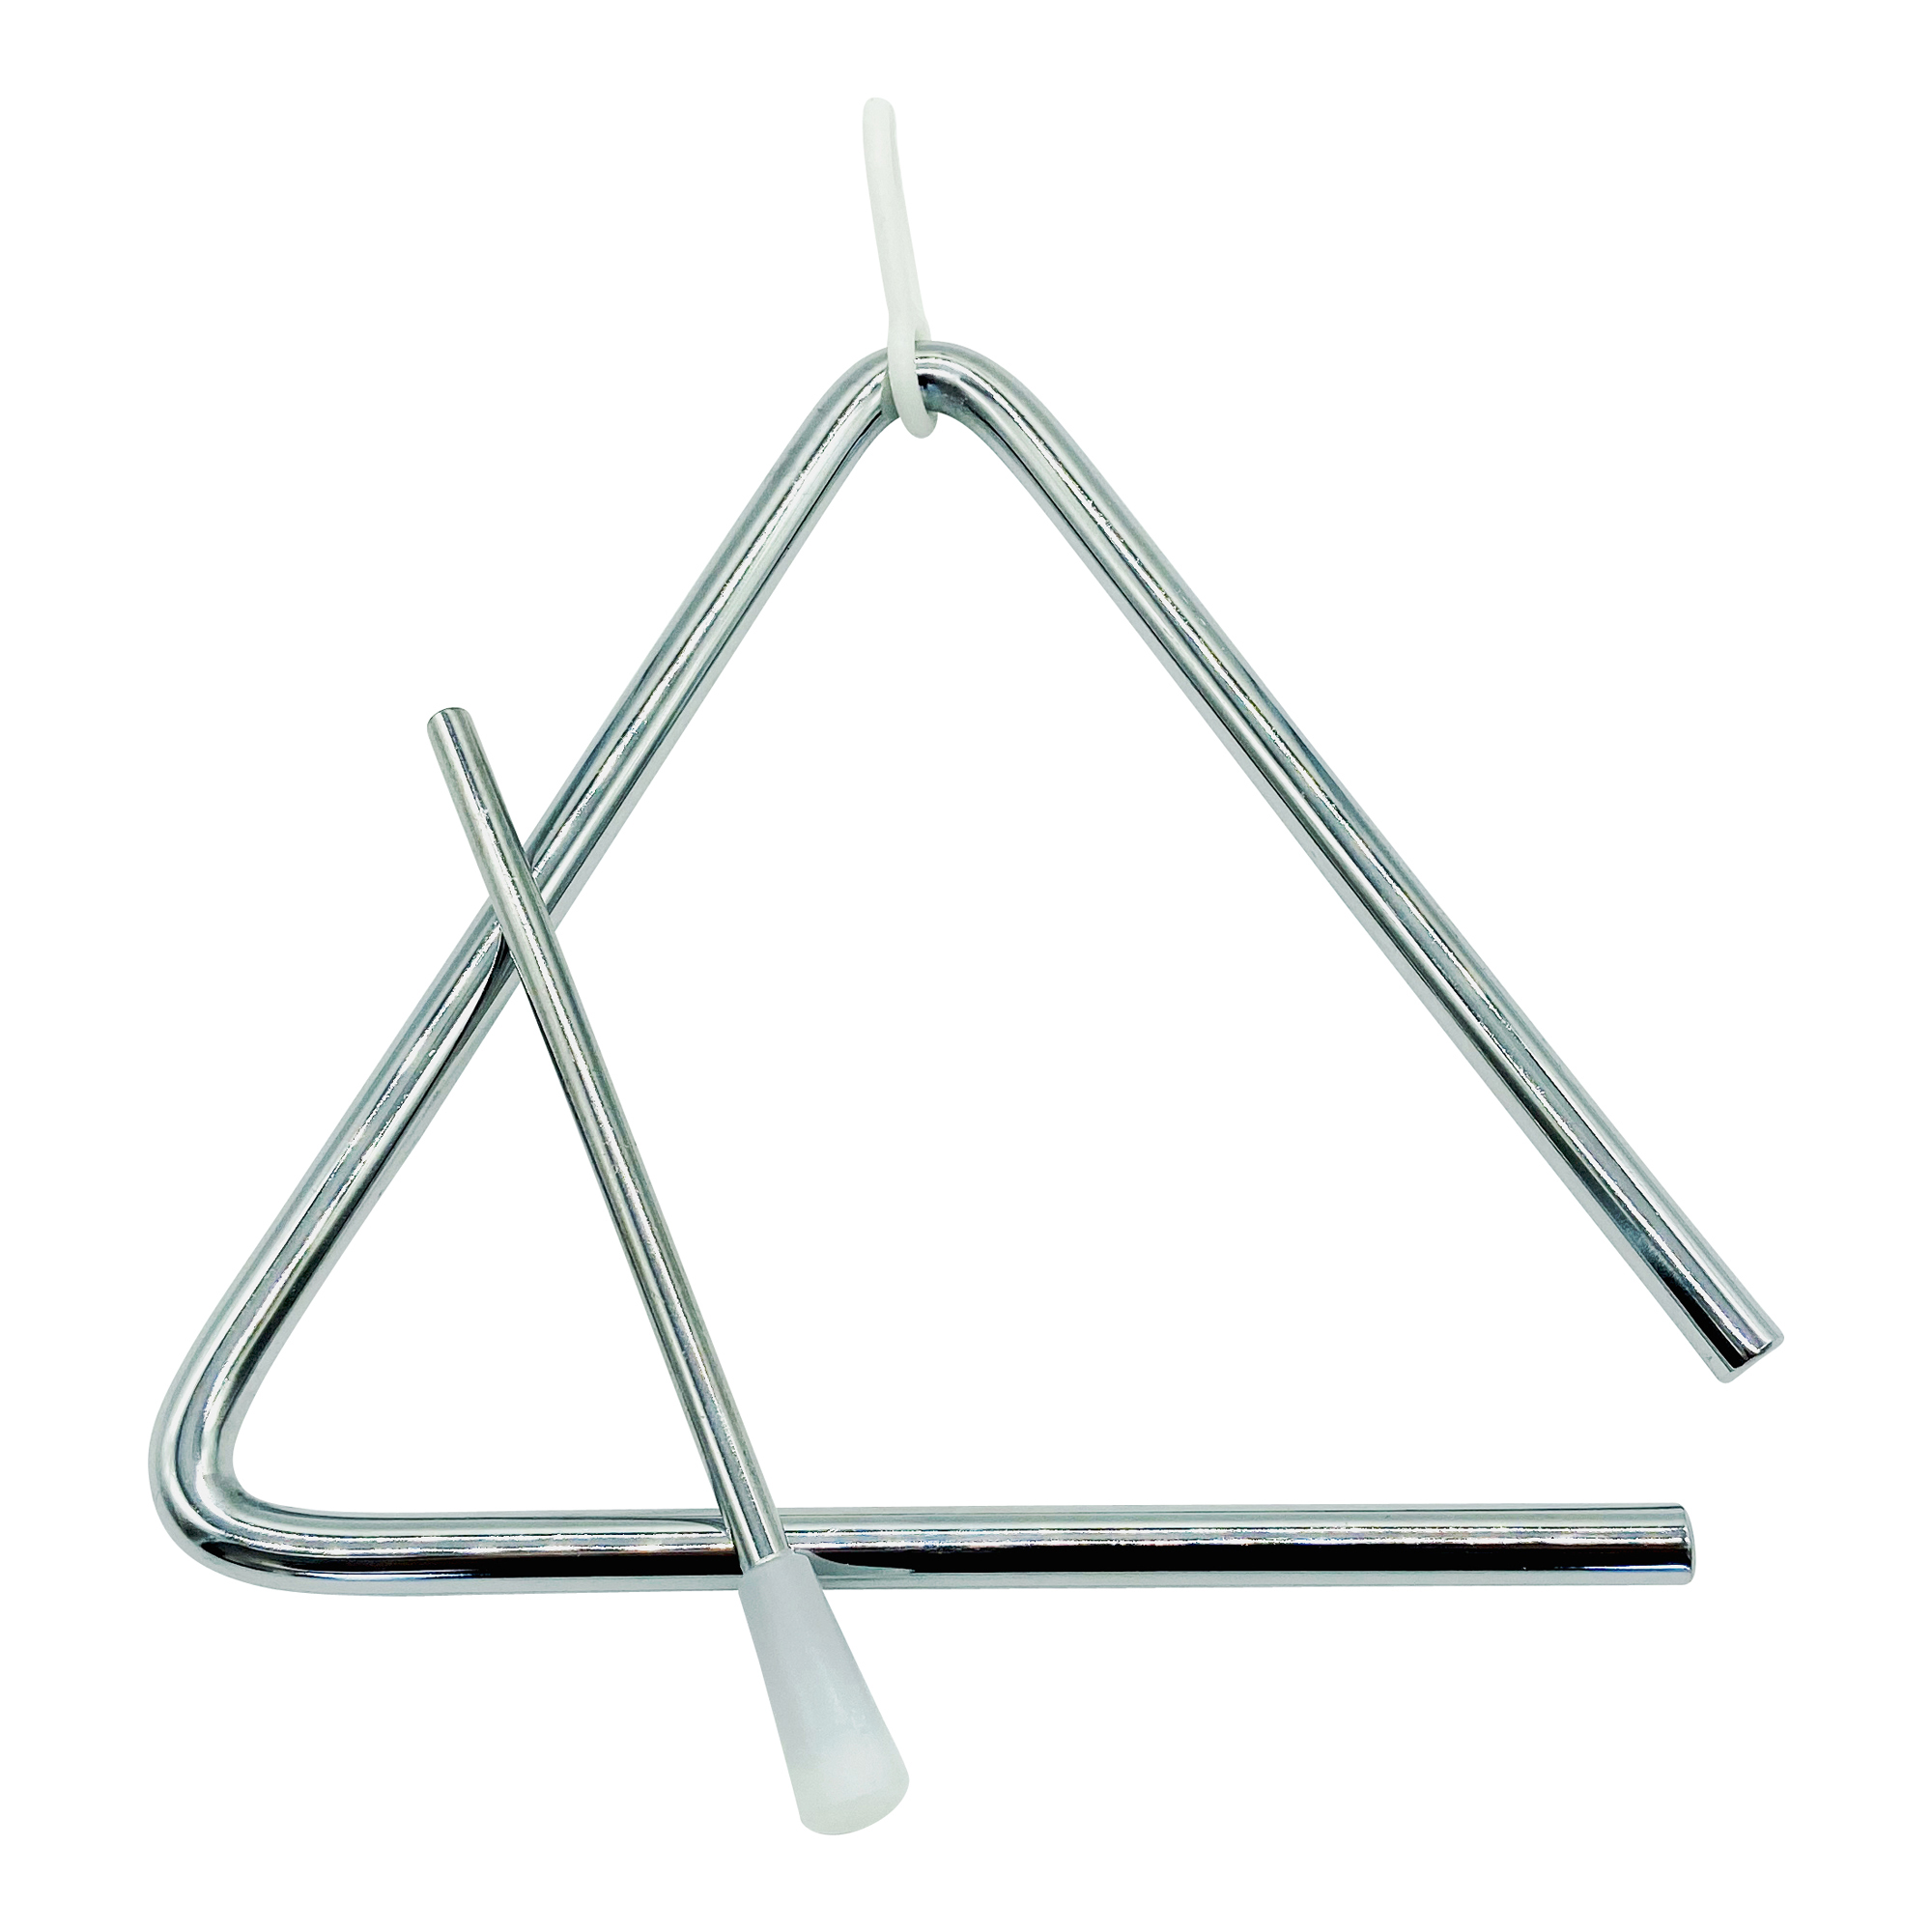 GICO Kinder Triangel aus Metall groß 15 x 15 cm mit Klöppel - Schlaginstrument 3870